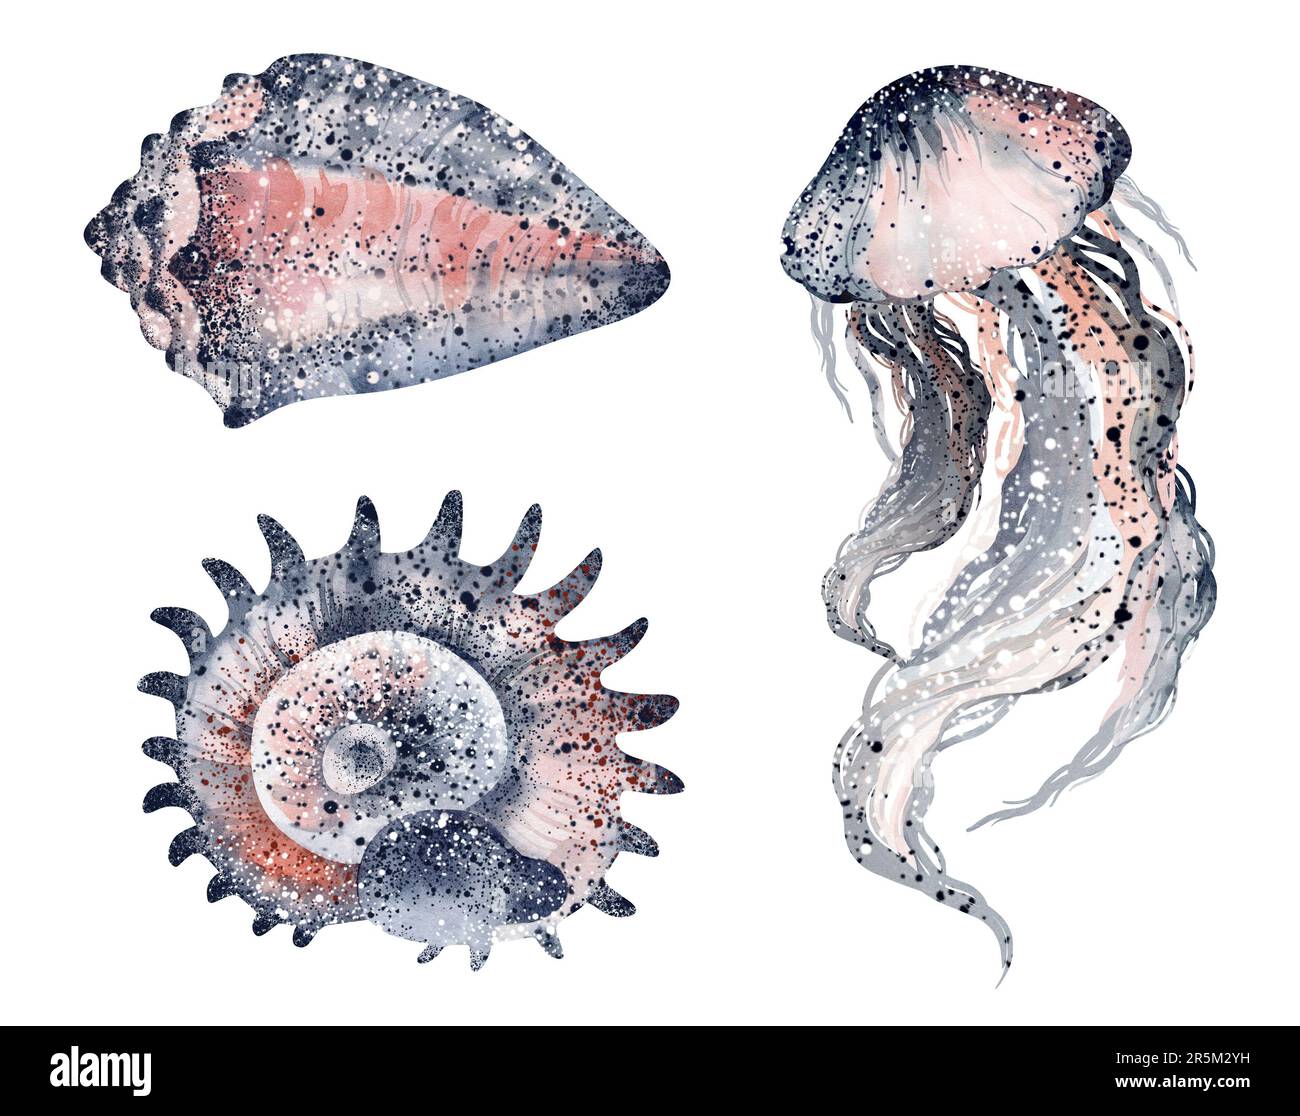 Aquarelle Illustrationen von Unterwassertieren Tintenfisch, Seepferdchen, Krabben, Seesterne, Quallen. Meeresbewohner der Unterwasserwelt. Stockfoto